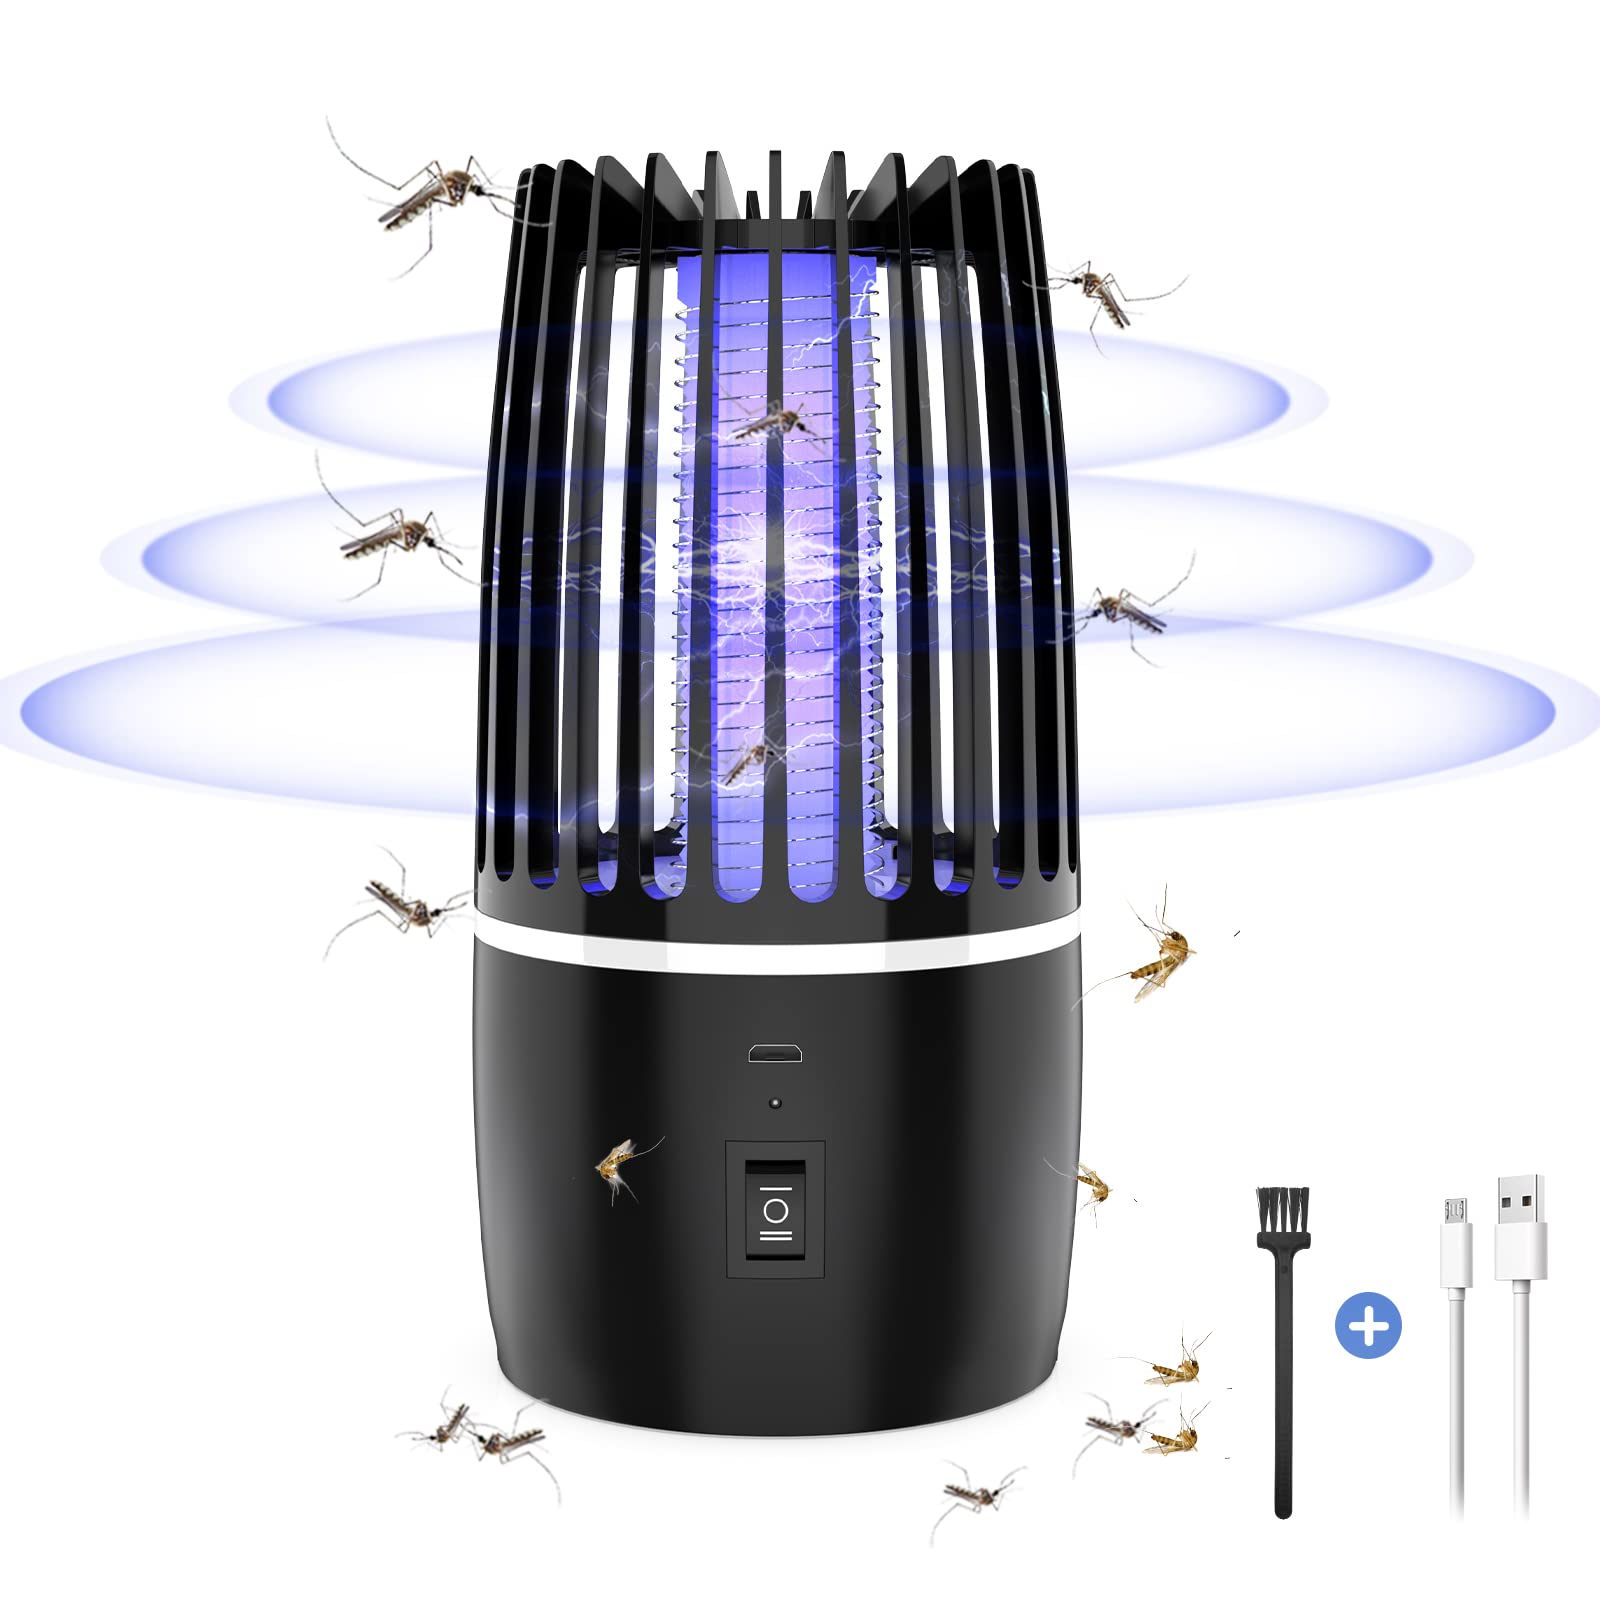 Insektenvernichter Mückenfalle Elektrisch USB Wiederaufladbarer Mückenvernichter Elektrische Lampe Fliegenfalle Insektenschutz Innen Außenbereich Schädlingsbekämpfung Lockstoff für Hinterhof (T)